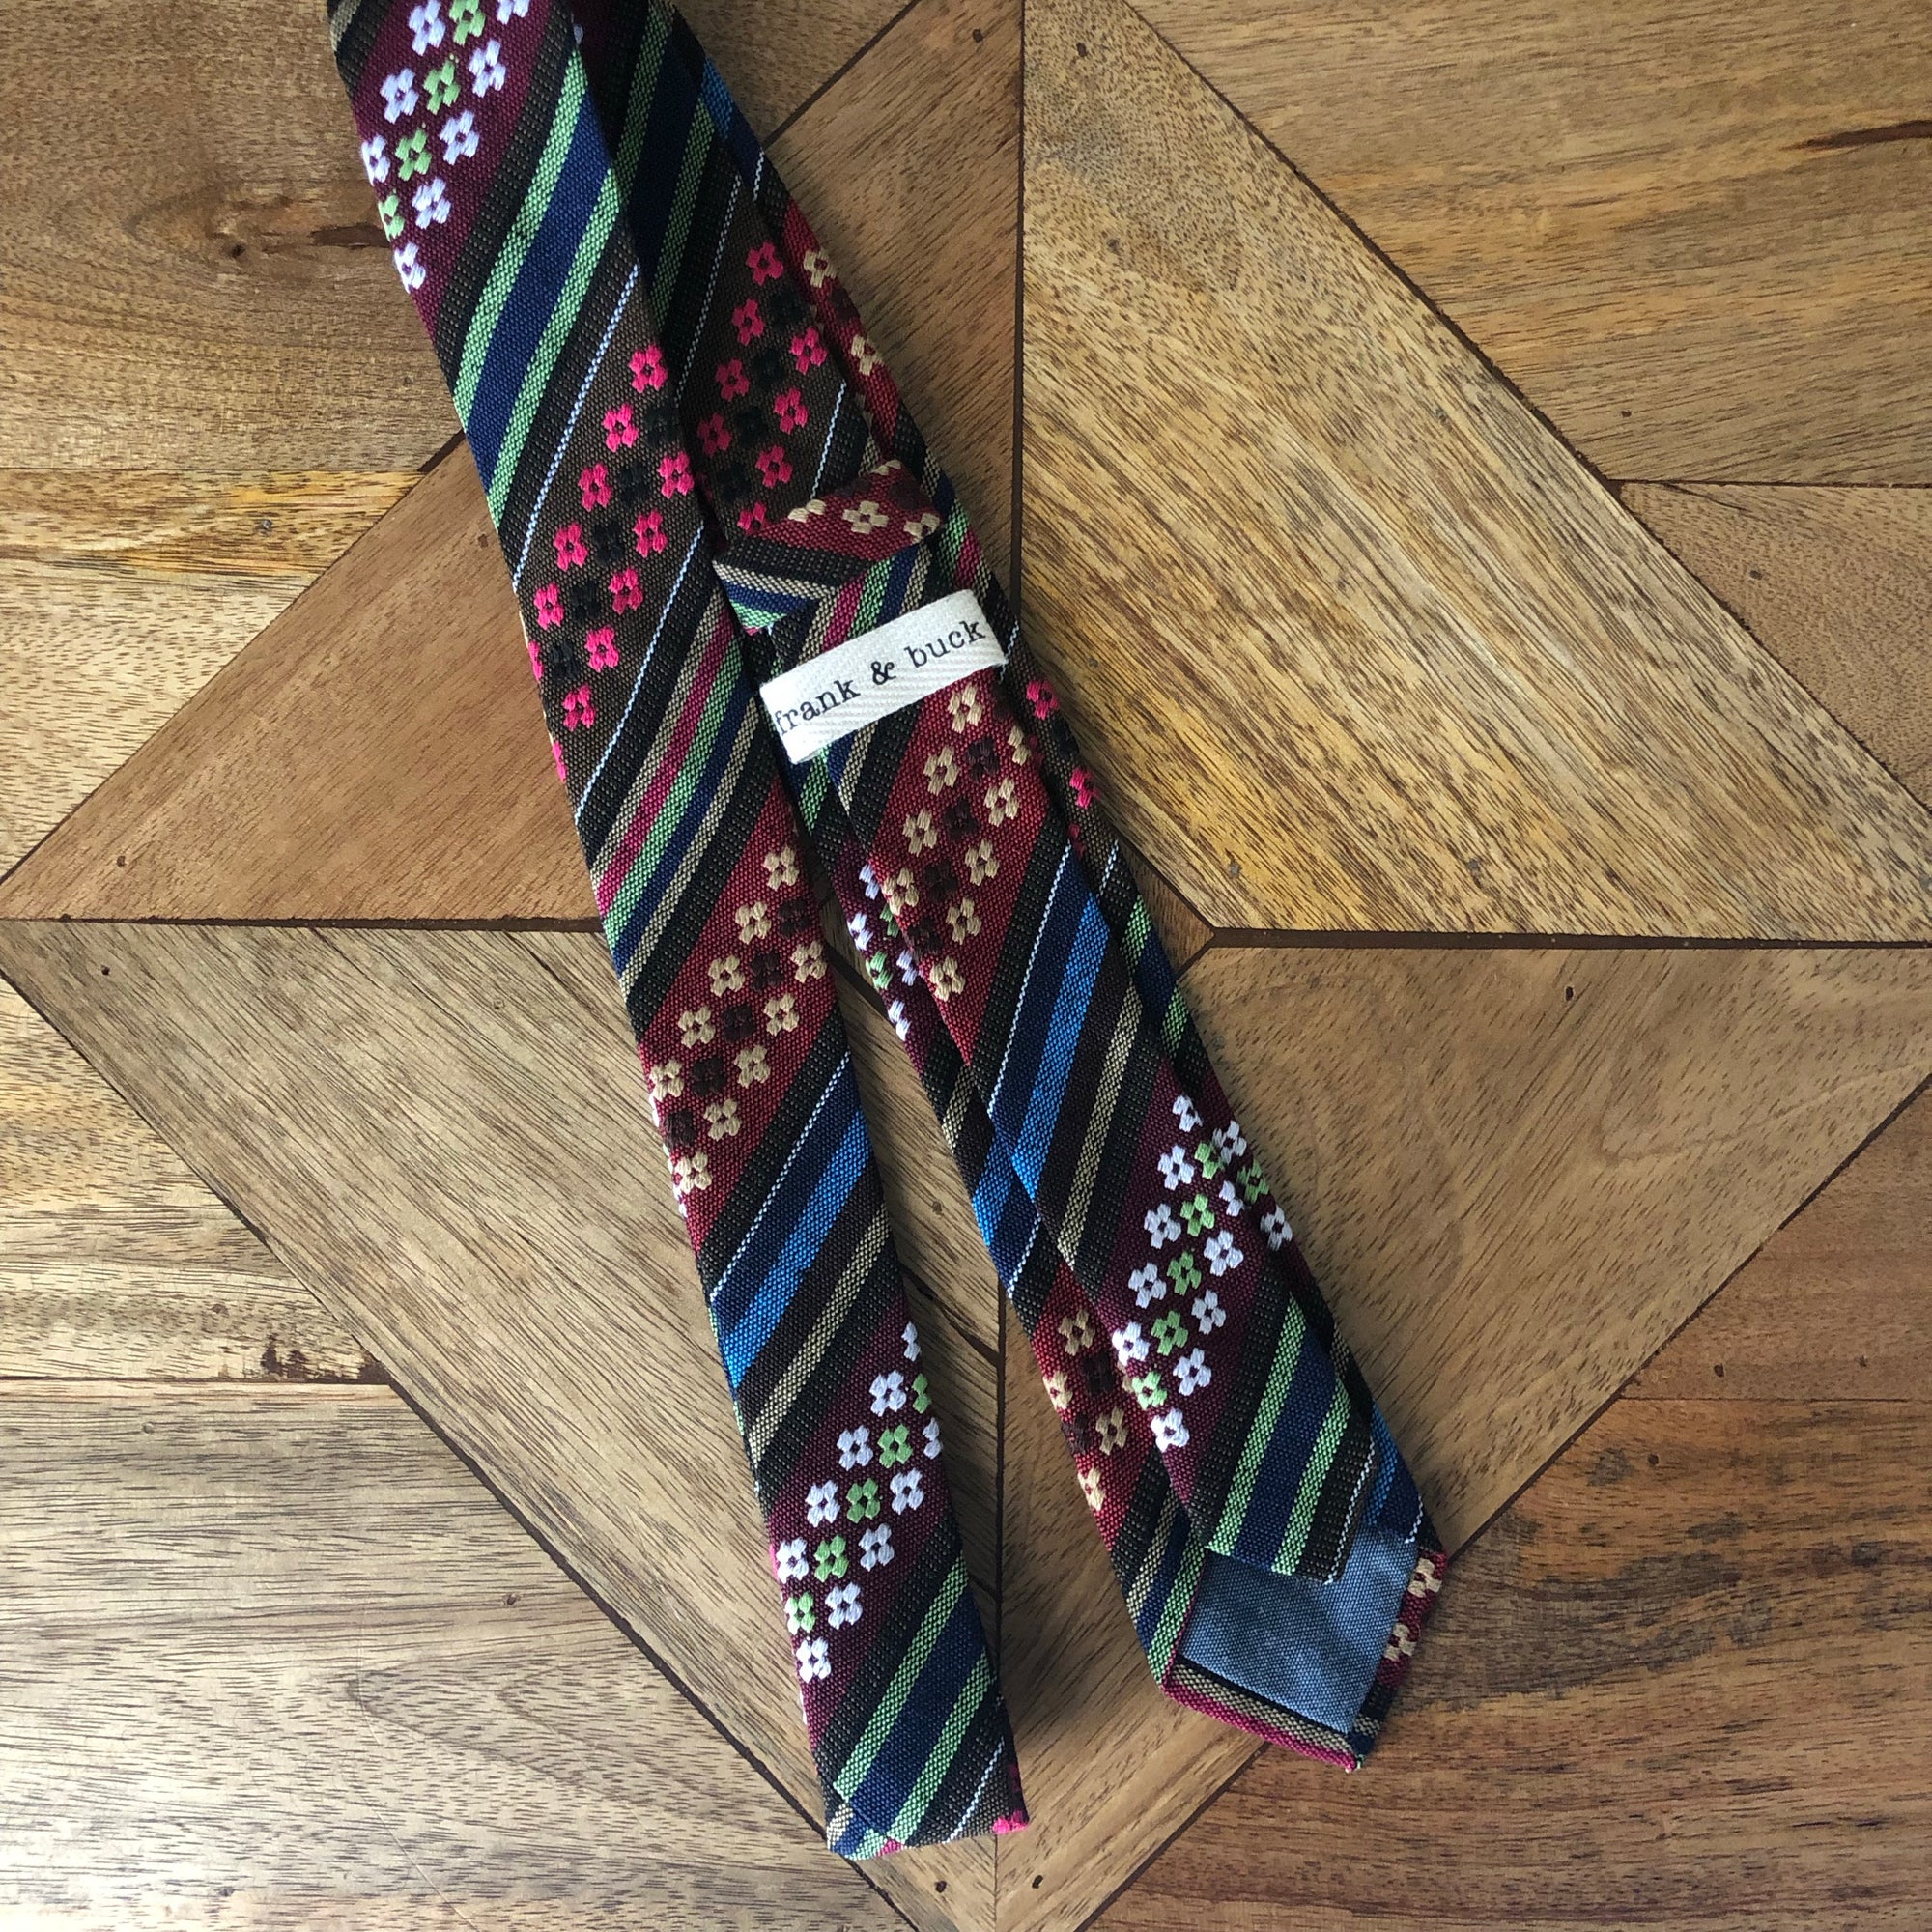 DOMINIC - Men's Tie